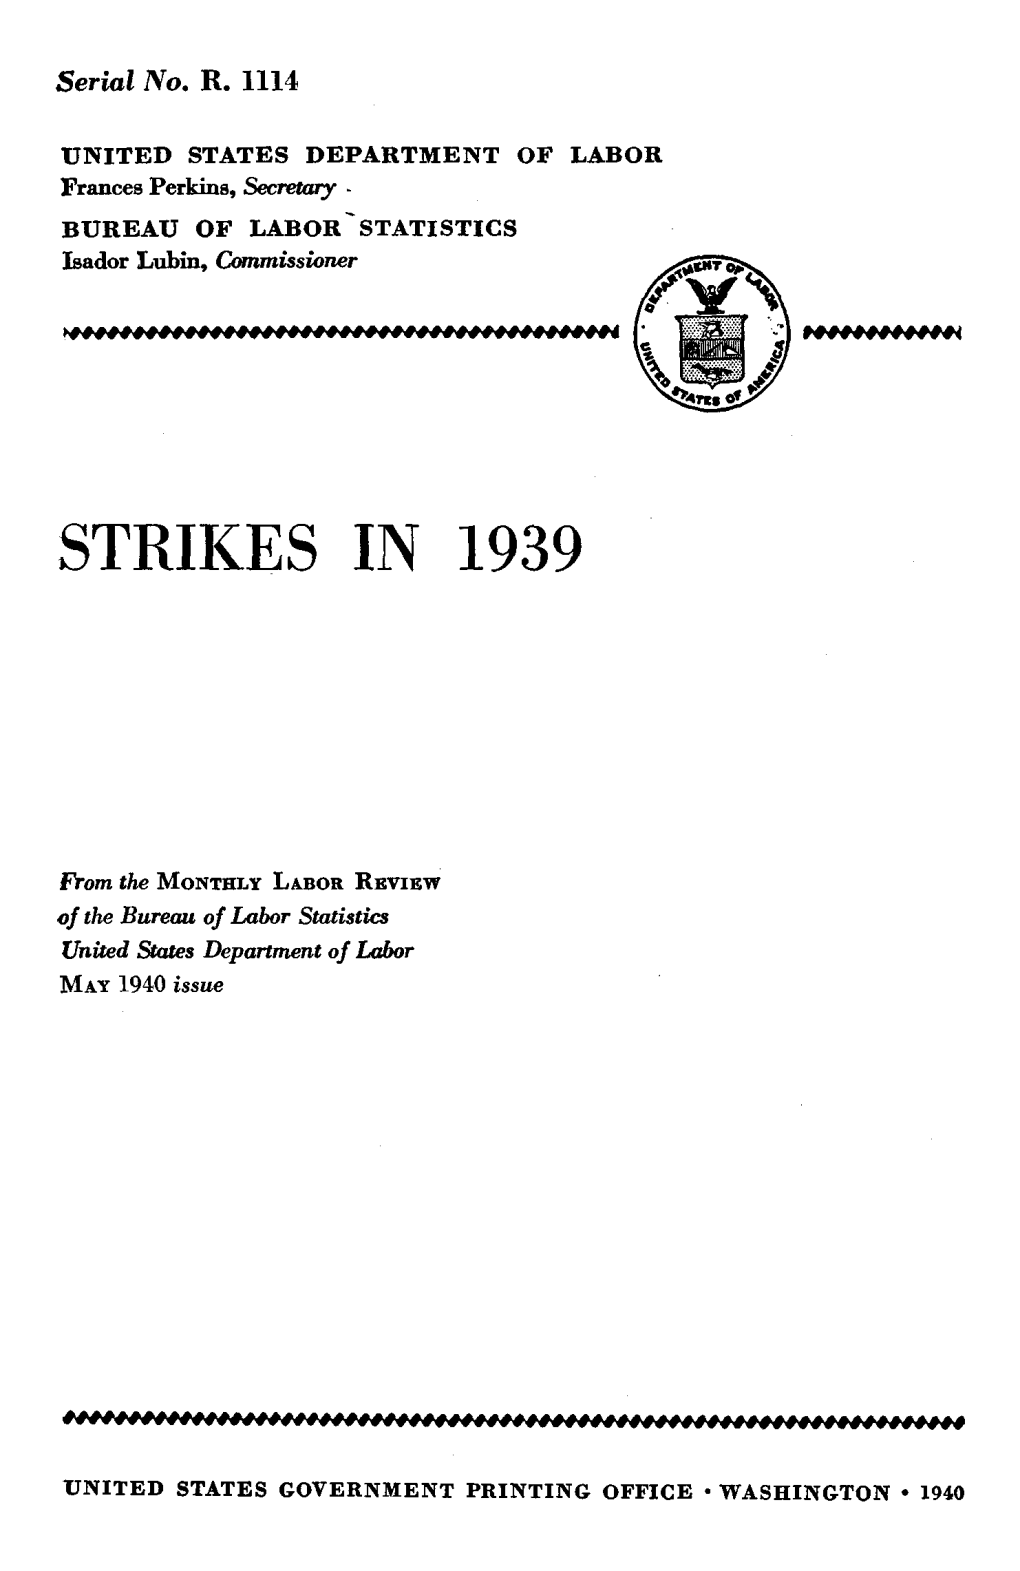 Strikes in 1939